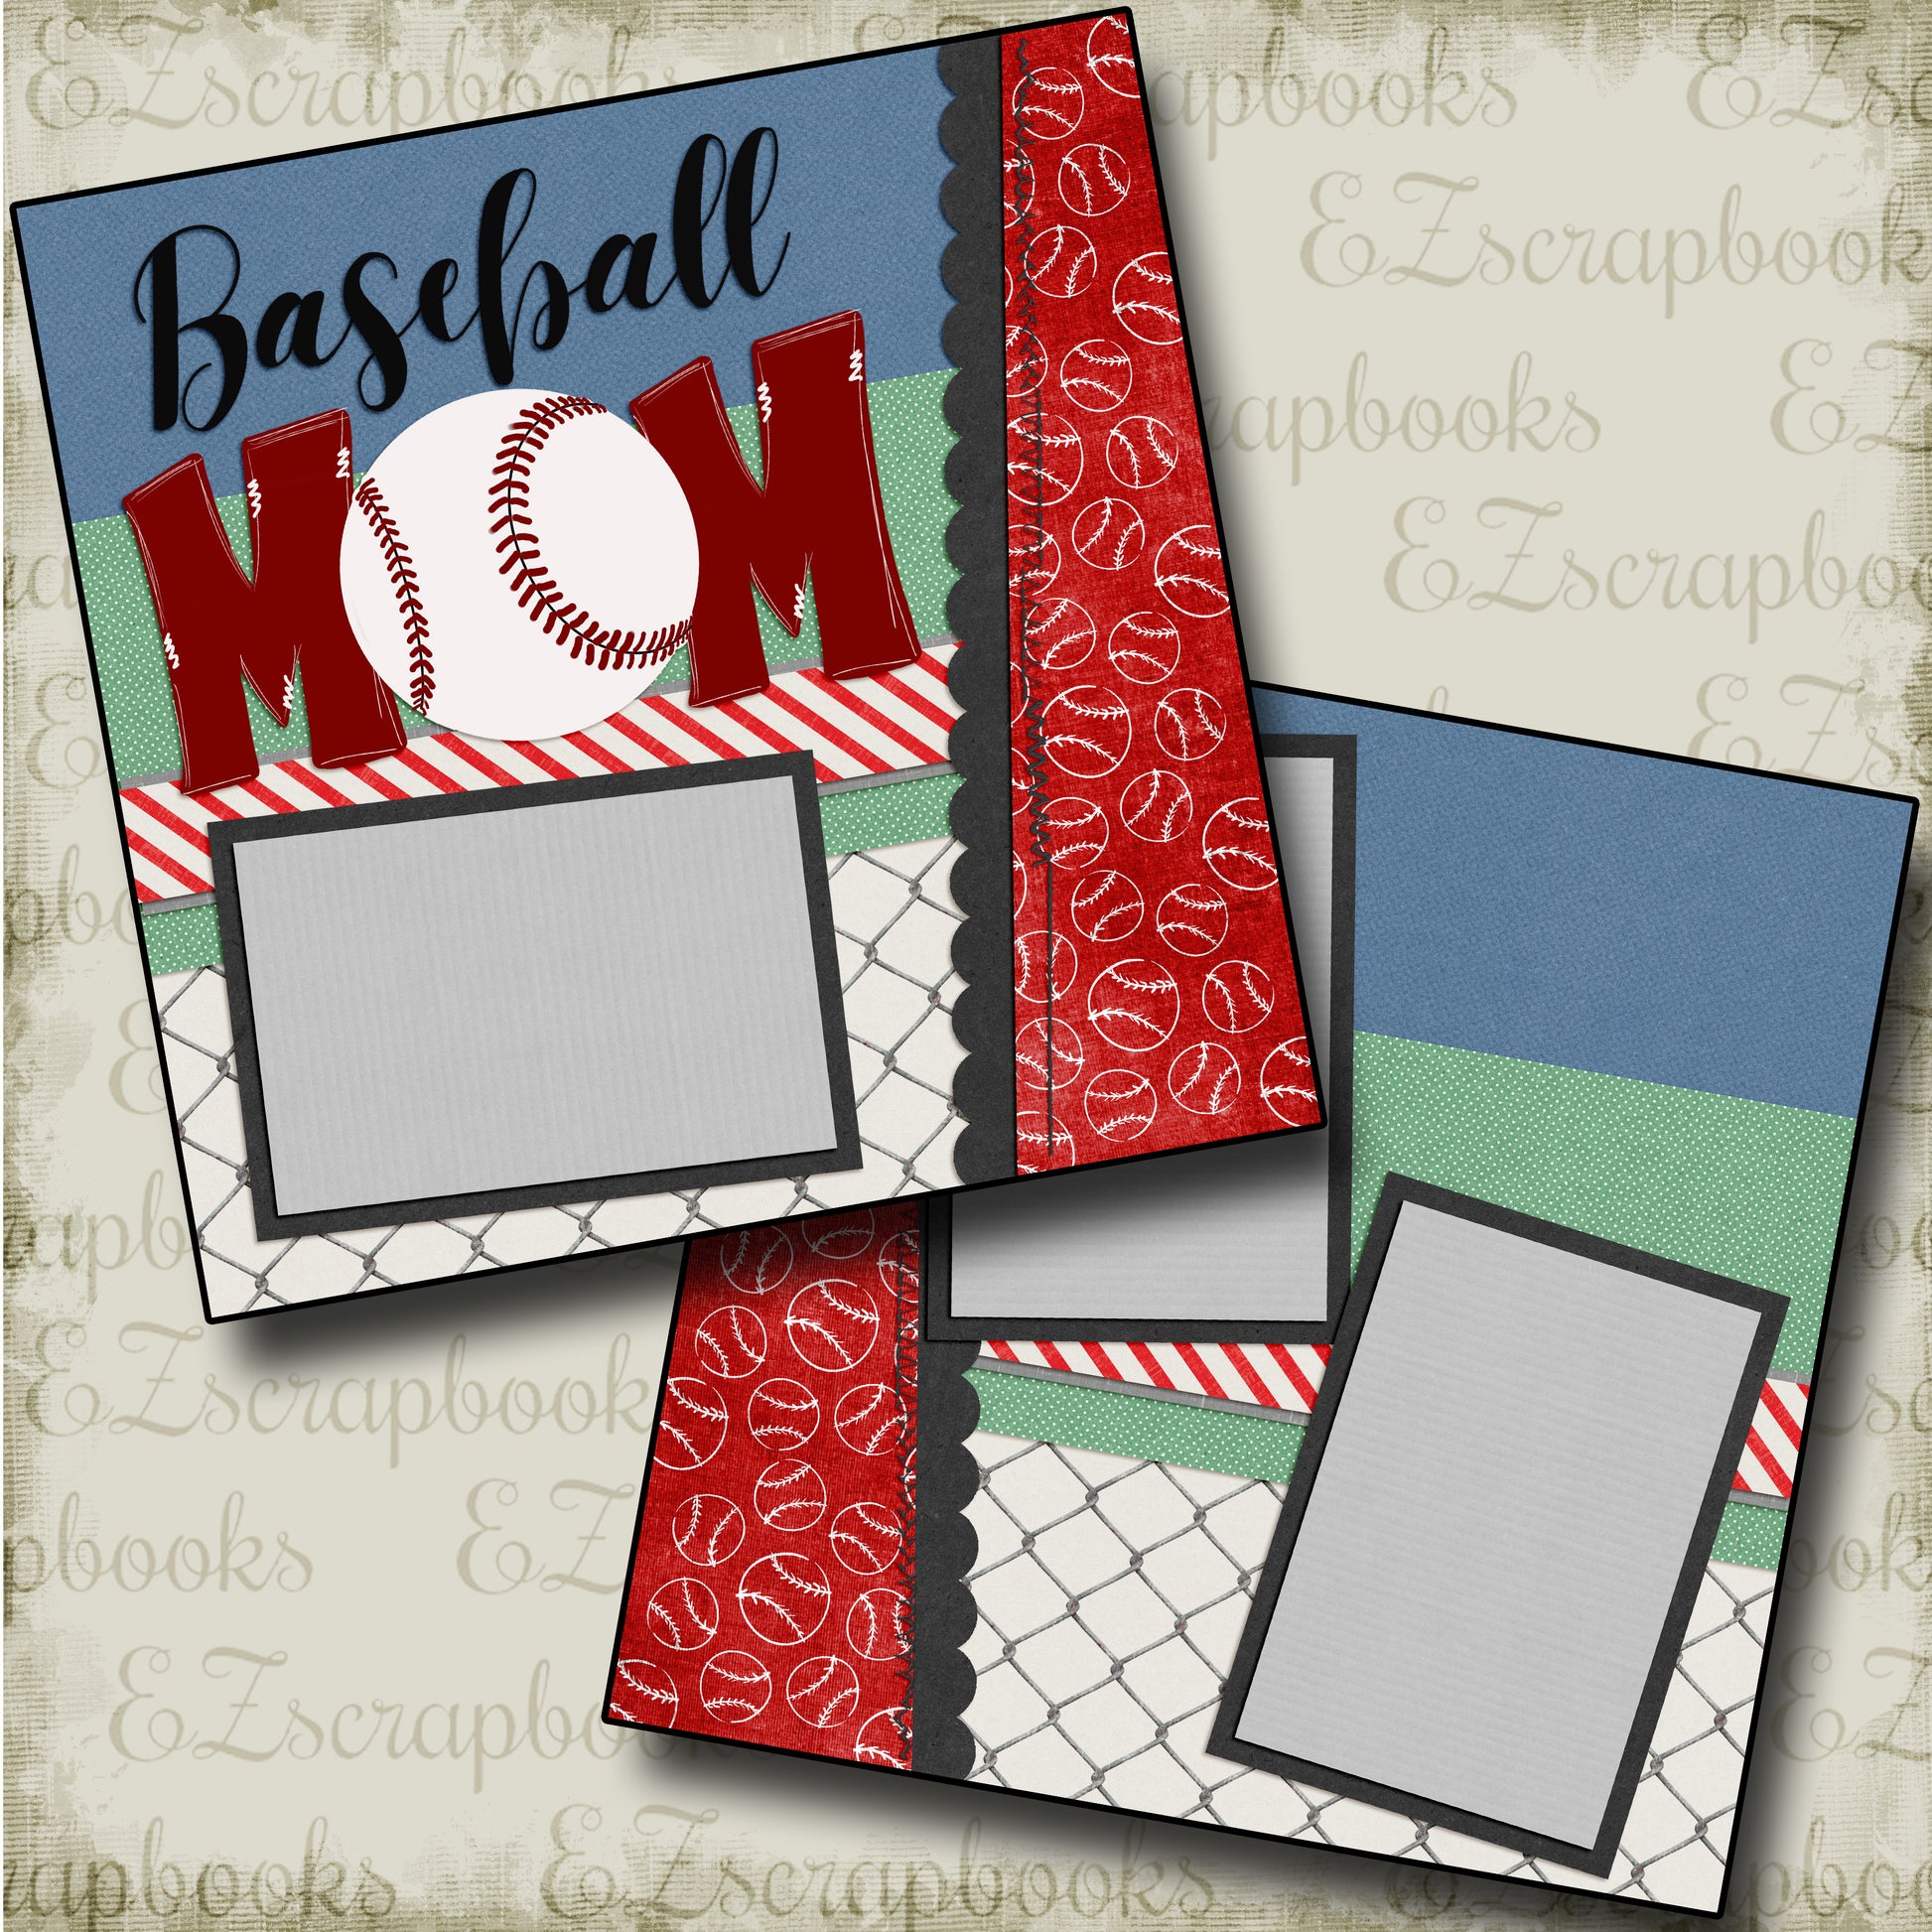 Baseball Mom - 4816 - EZscrapbooks Scrapbook Layouts baseball, Sports